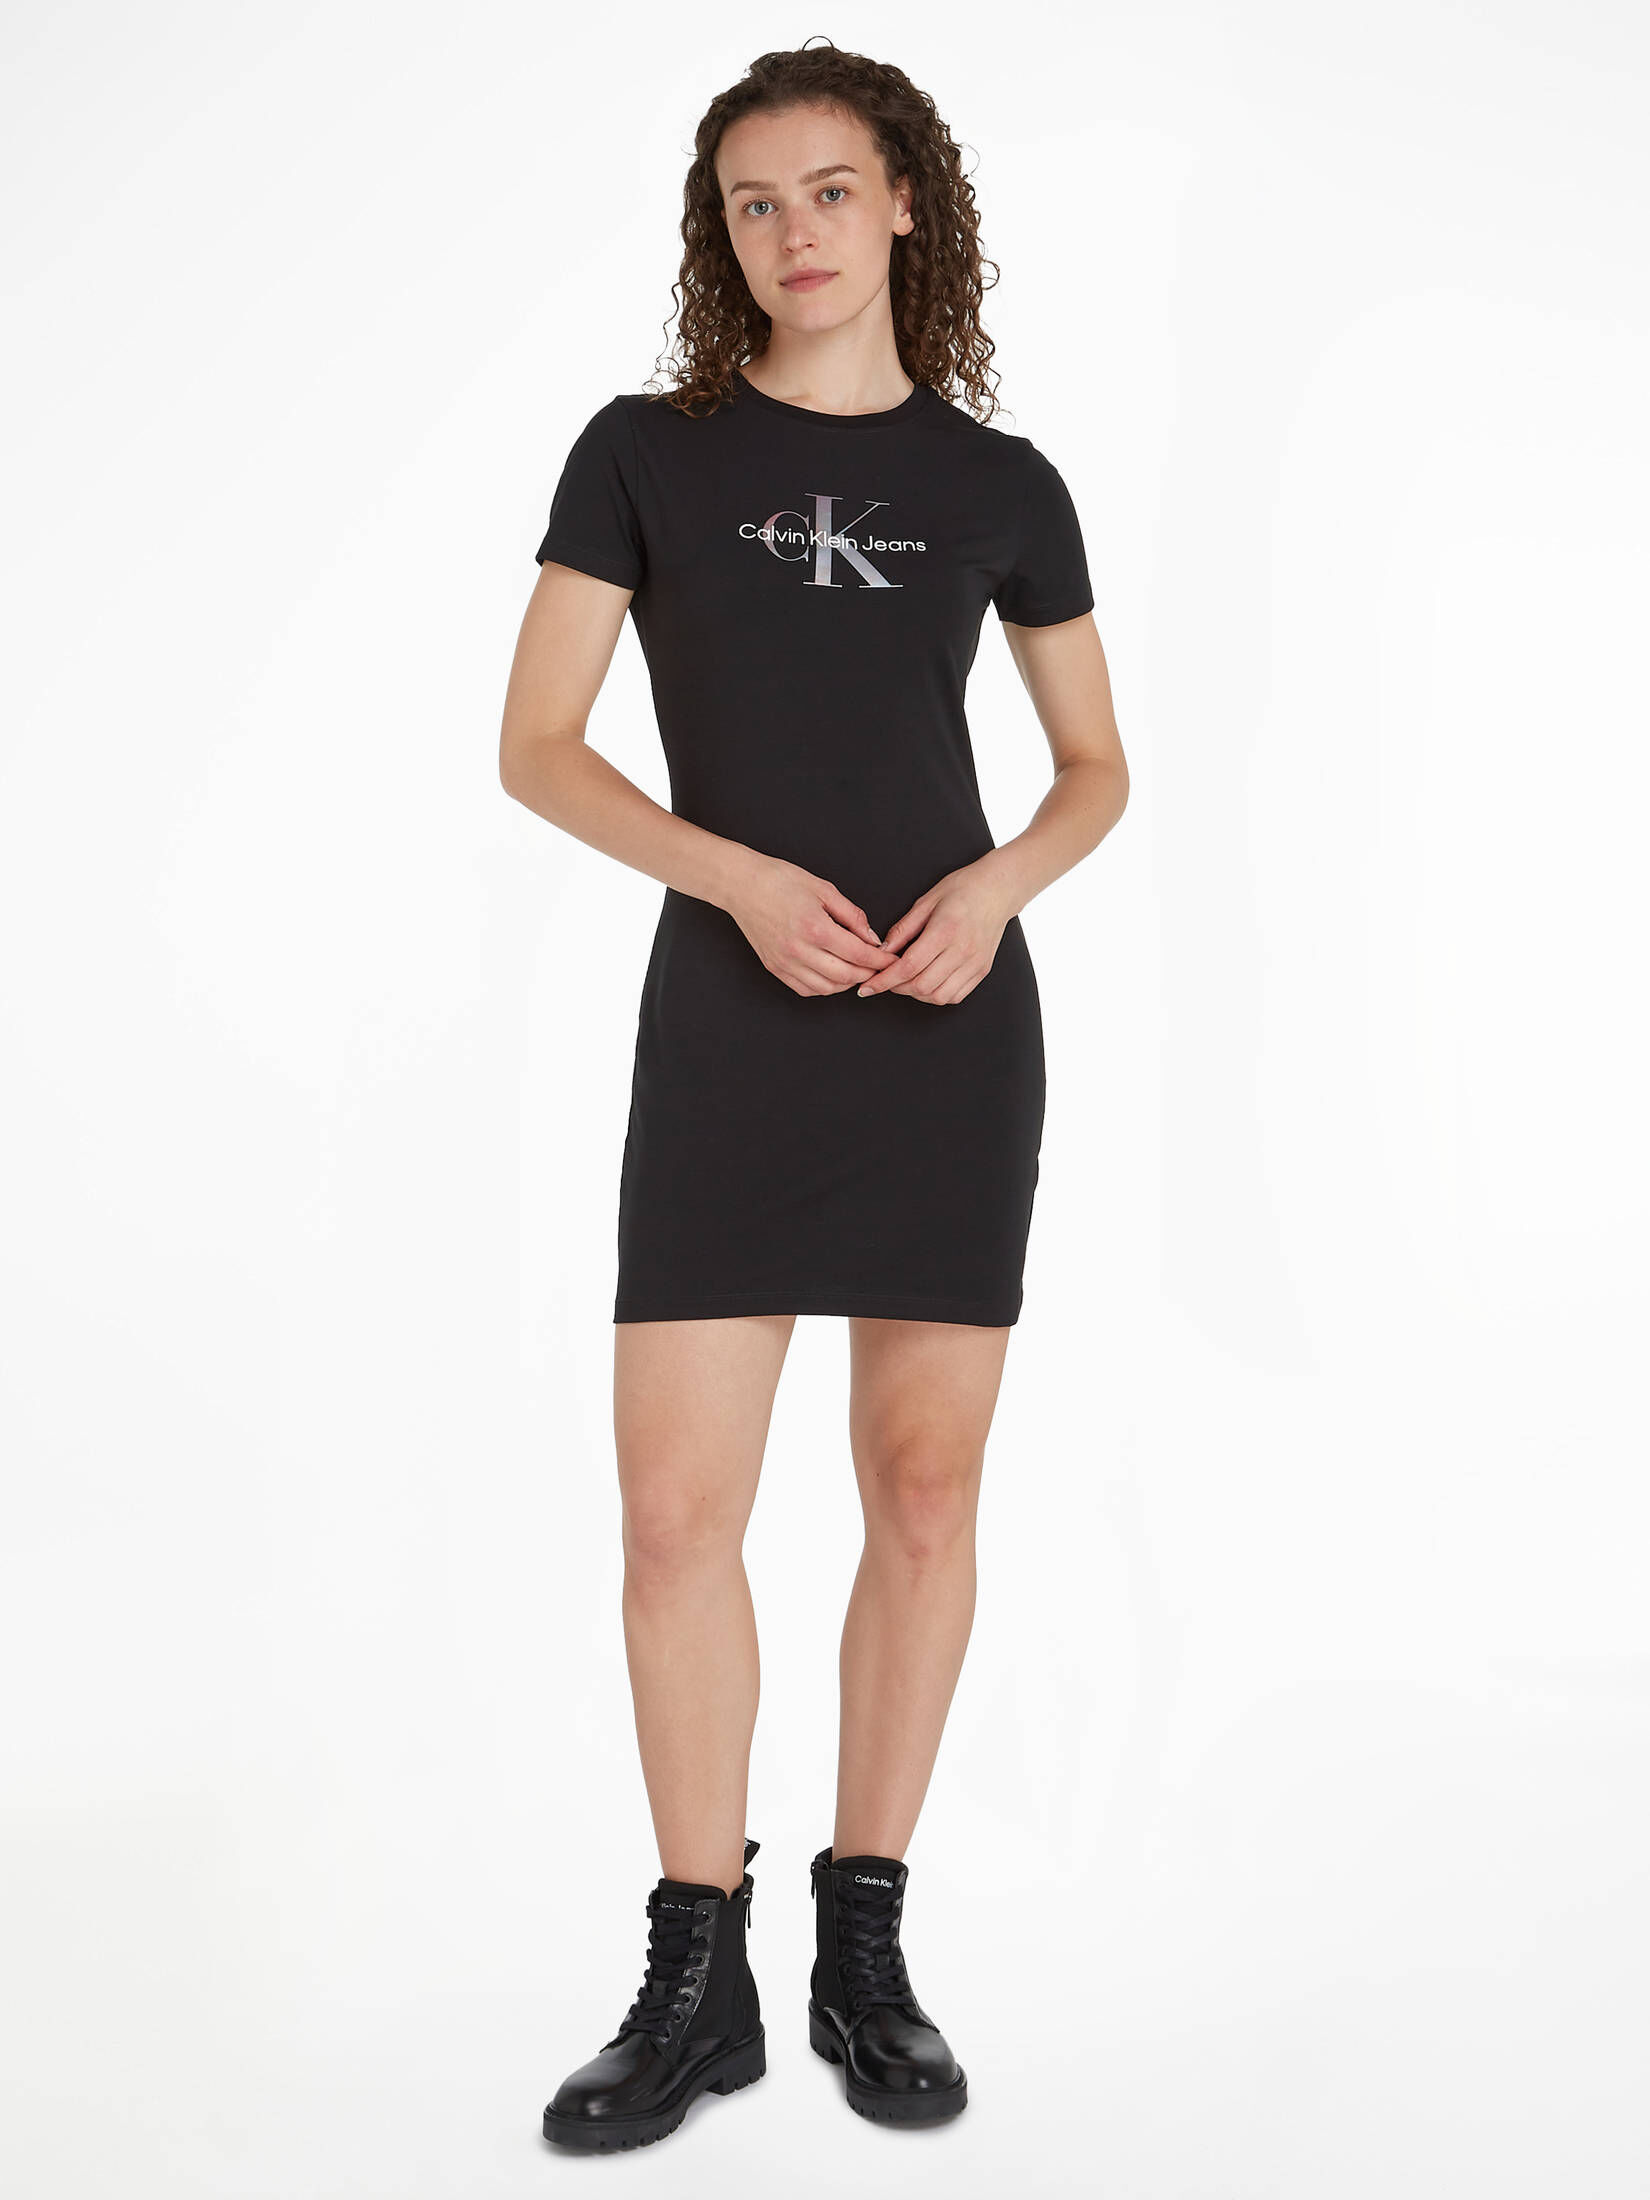 CALVIN KLEIN JEANS Damen T-Shirt-Kleid mit Monogramm kaufen | engelhorn